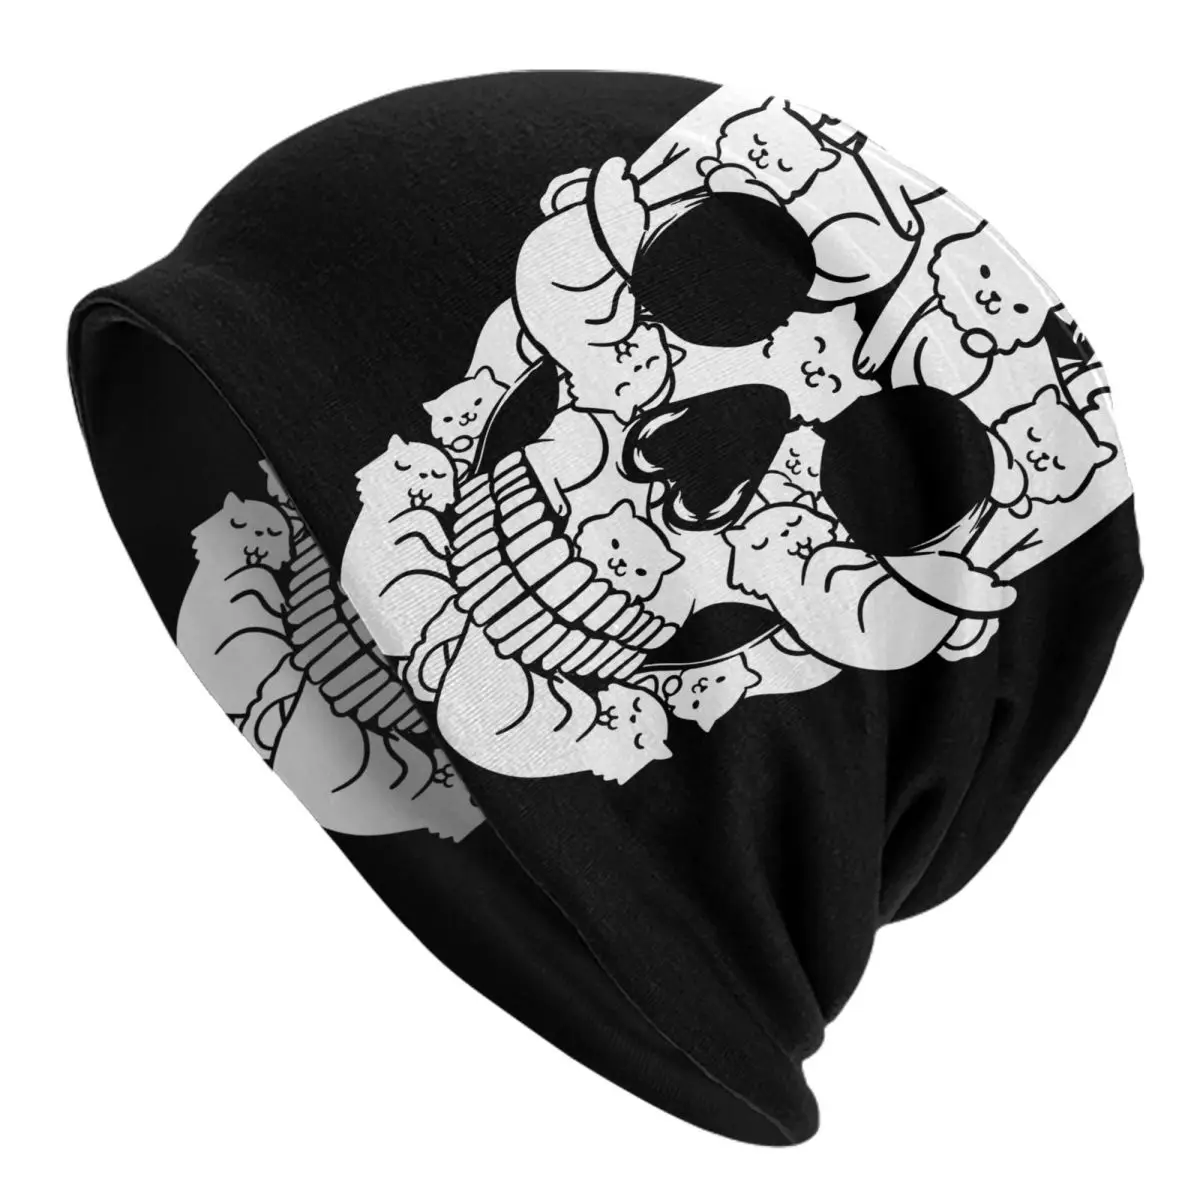 Skull Persian Cute Kittie Adult Men's Women's Knit Hat Keep warm winter Funny knitted hat